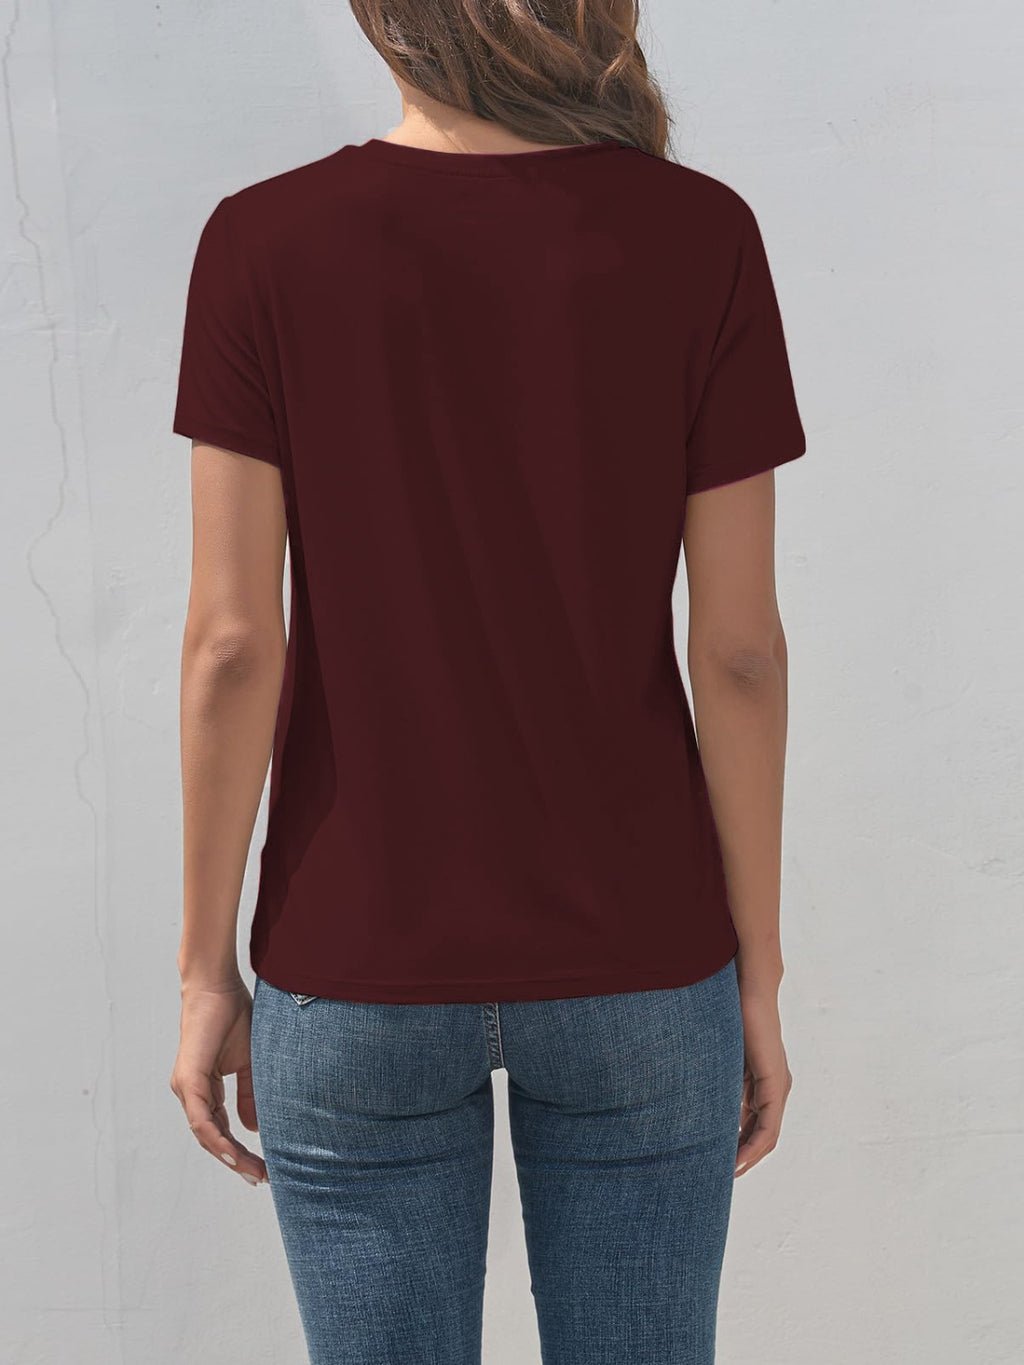 Cross Graphic Round Neck T-Shirt